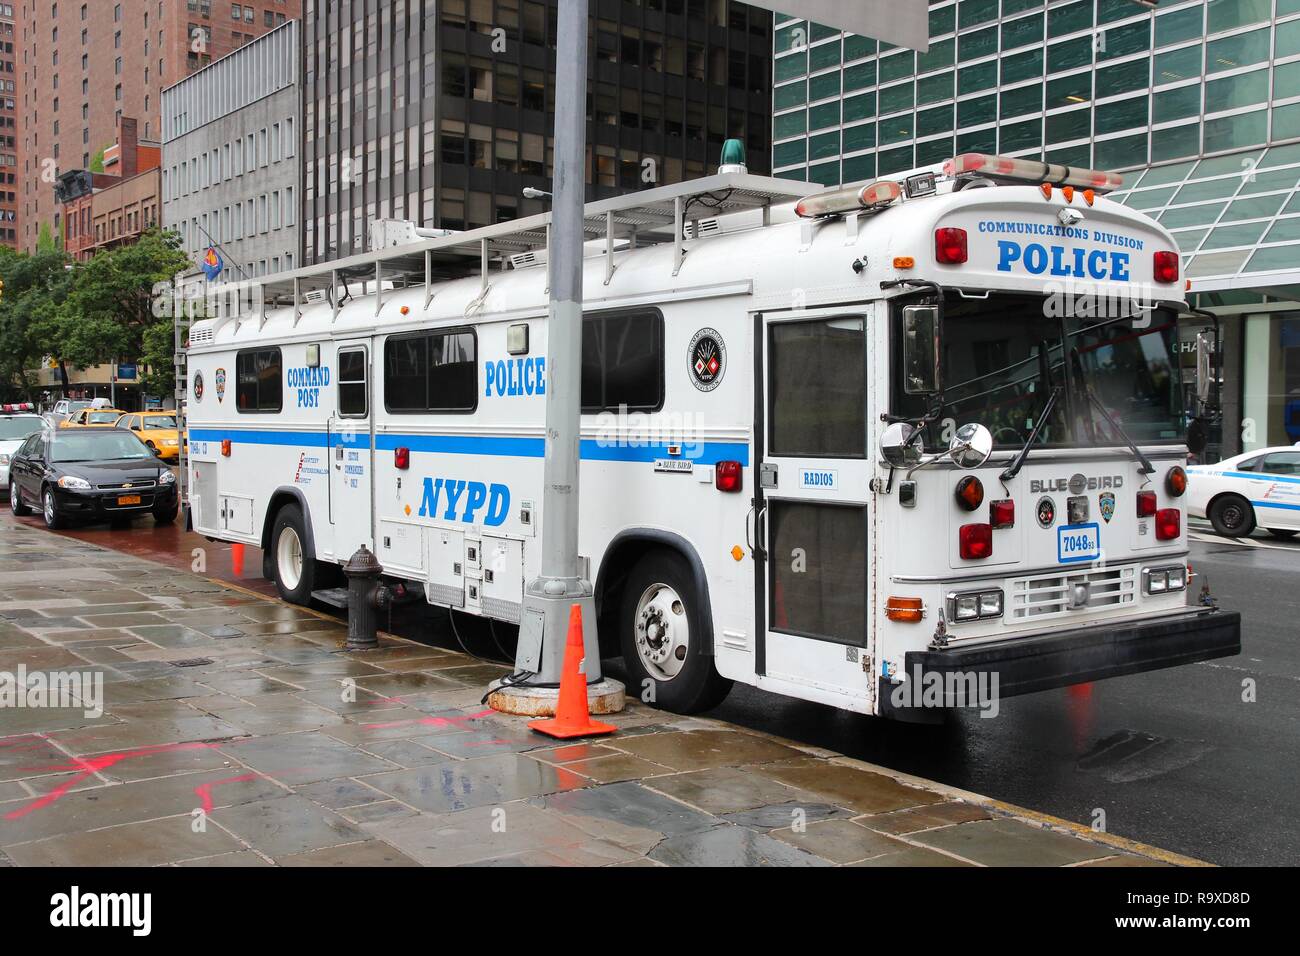 NEW YORK, USA - Juli 1, 2013: NYPD Command Post Bus in Manhattan geparkt. NYPD beschäftigt 34.500 uniformierte Beamte. Stockfoto